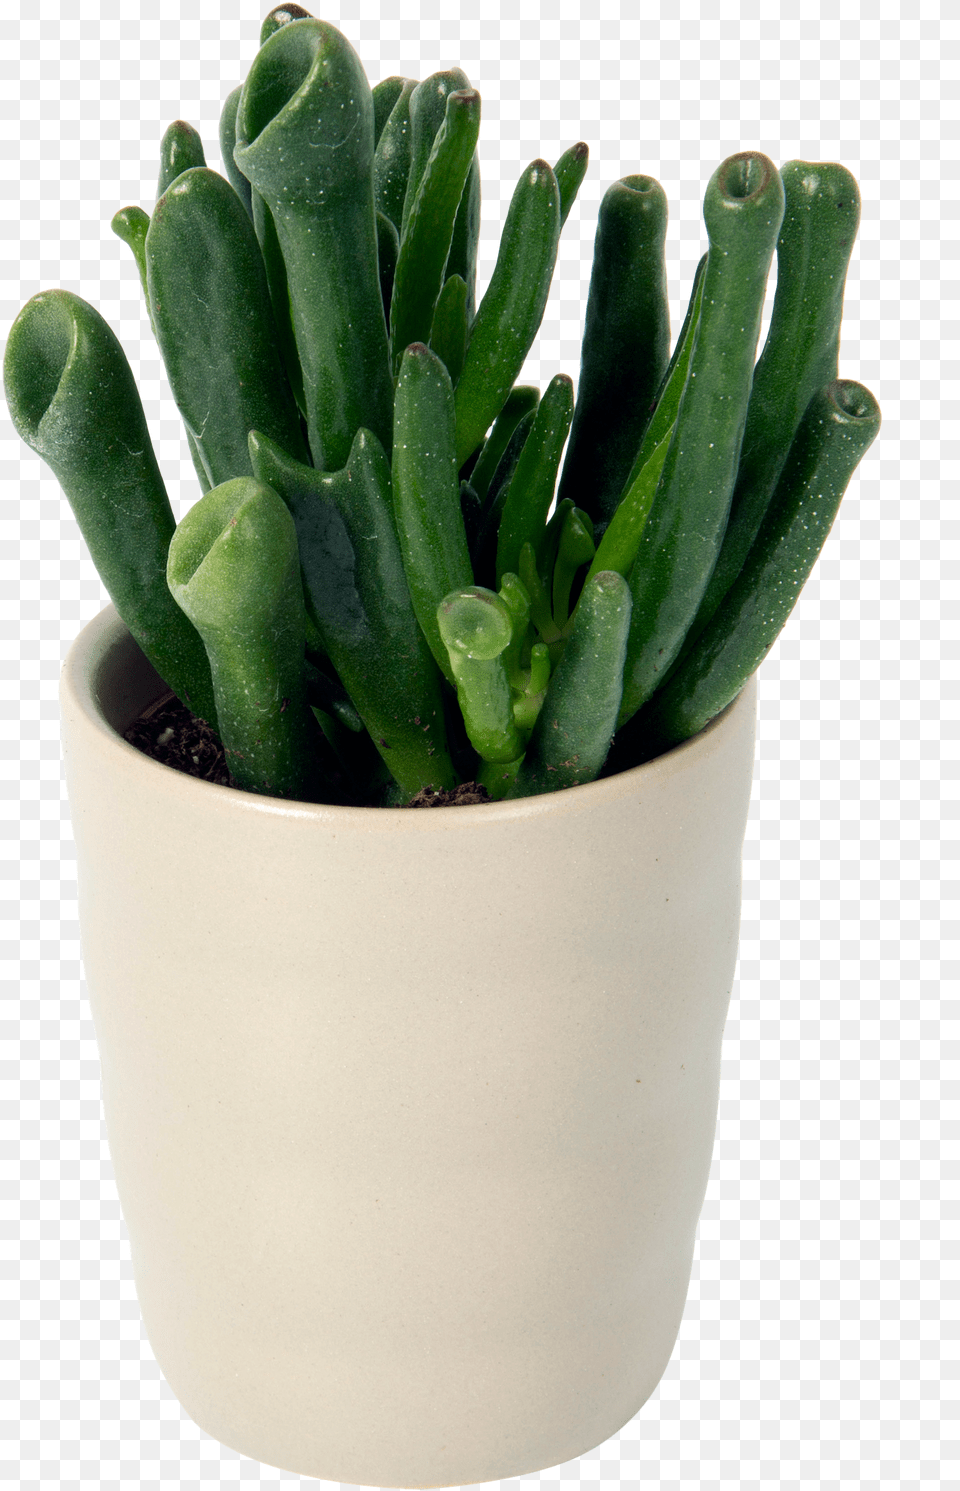 Cactus, Jar, Plant, Planter, Potted Plant Png Image